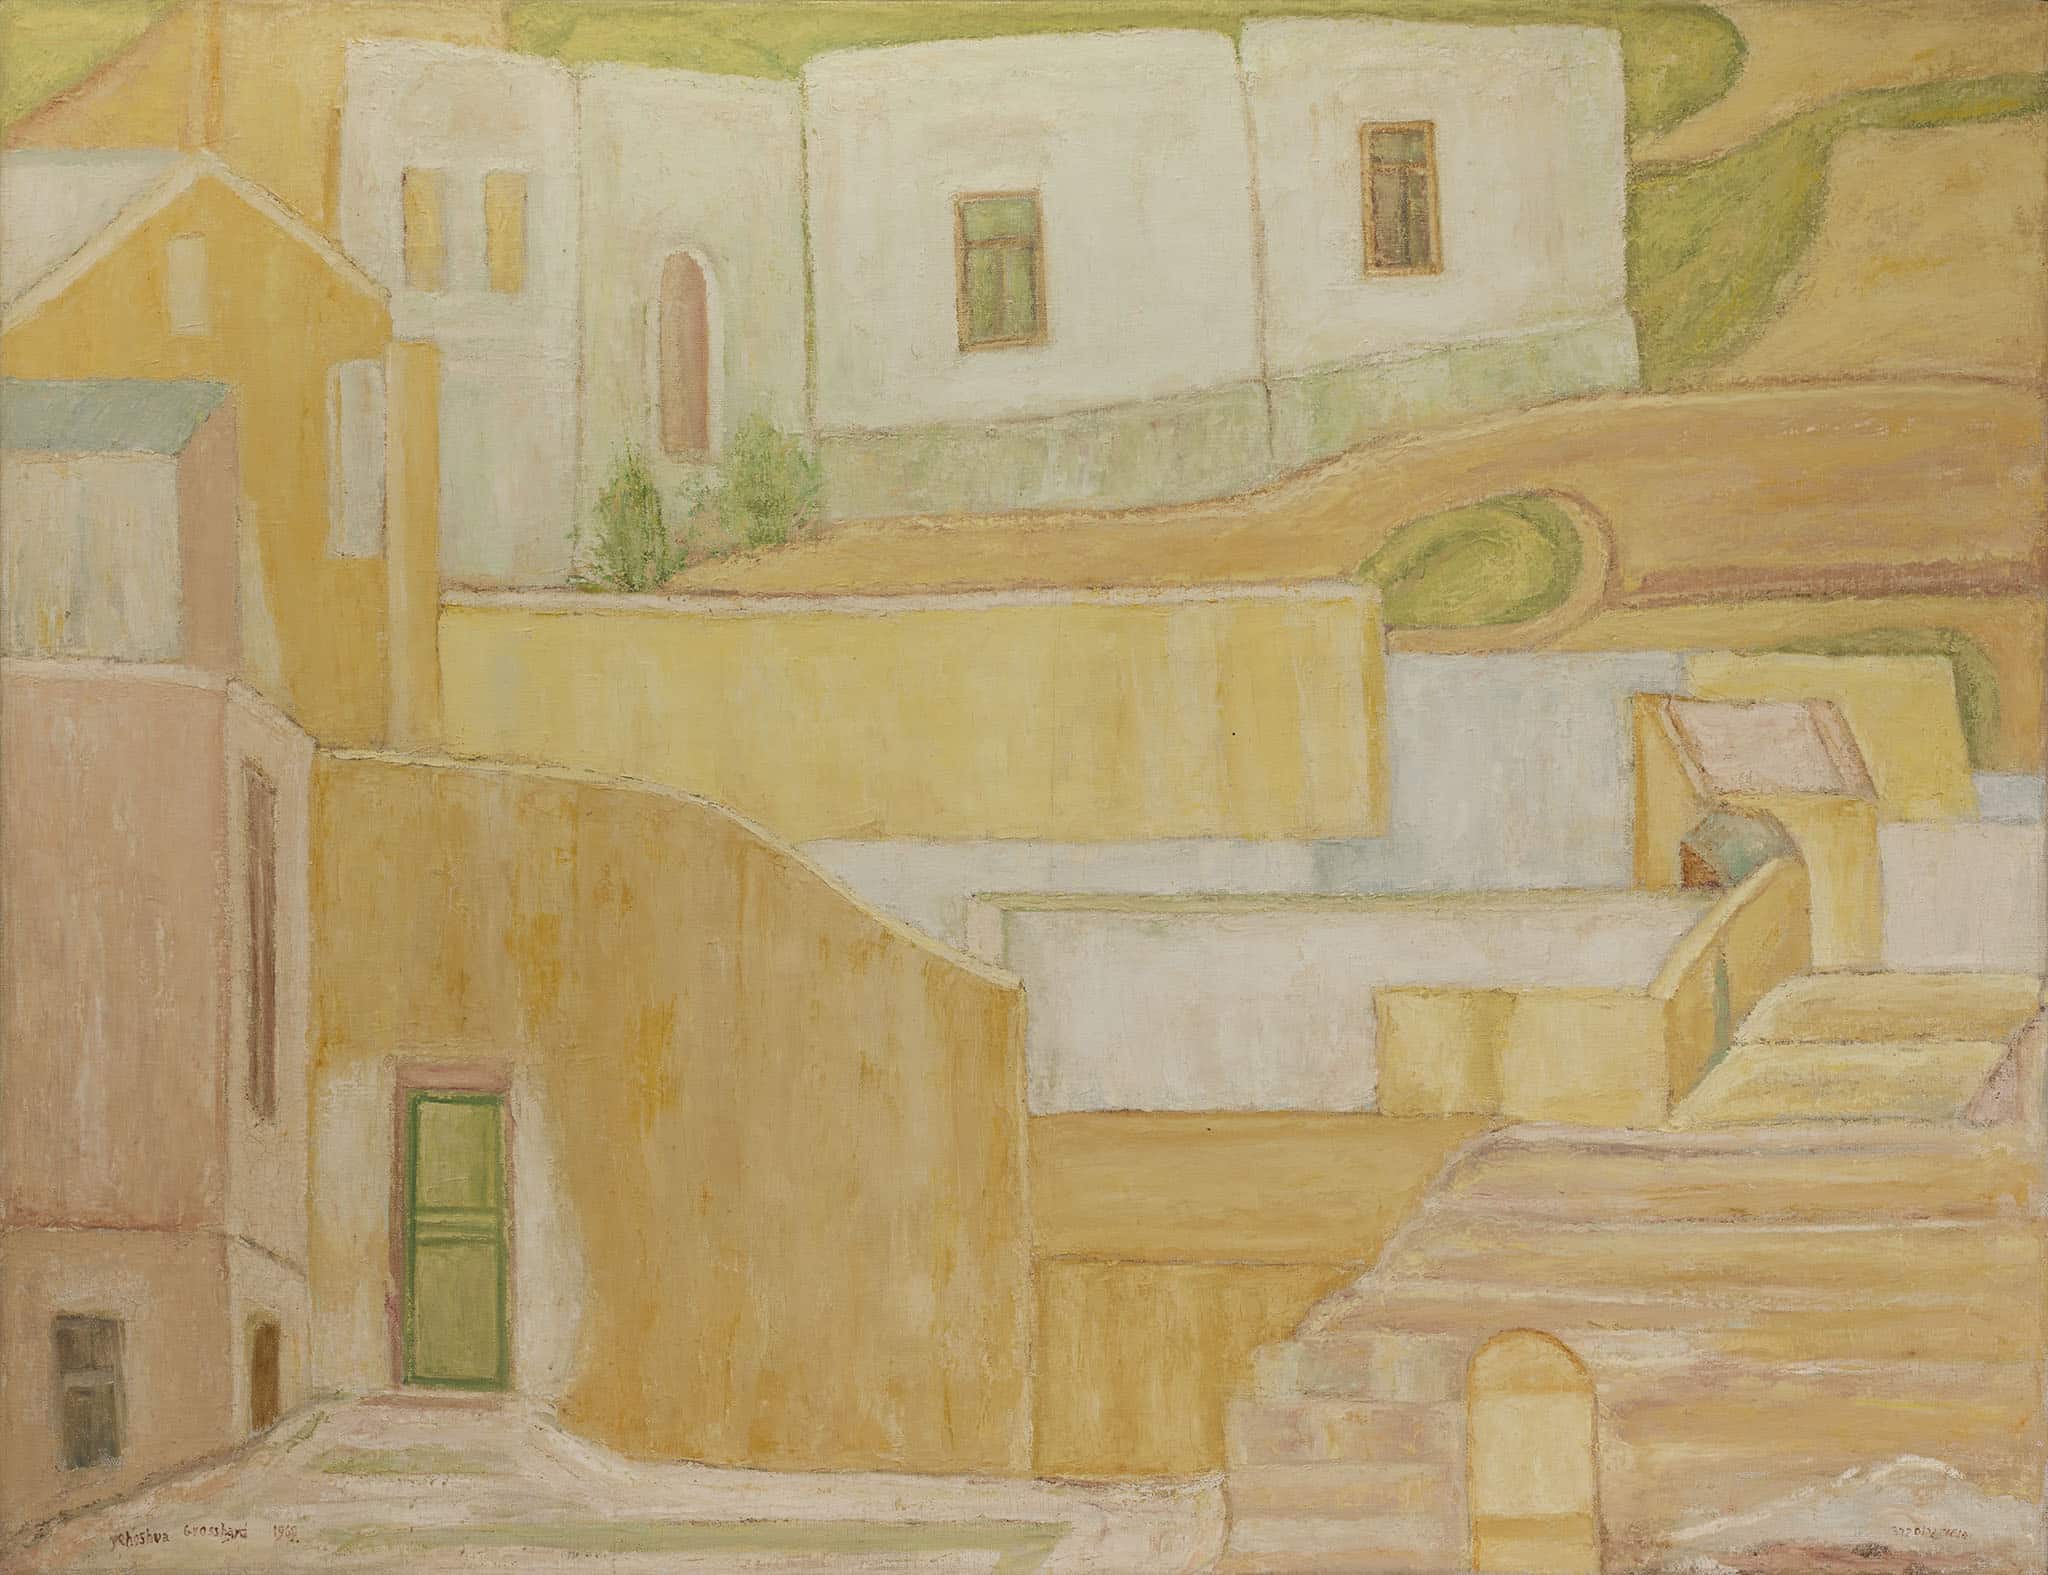 יהושע גרוסברד, "בתים בחיפה", 1969, שמן על בד, 130x100 ס"מ